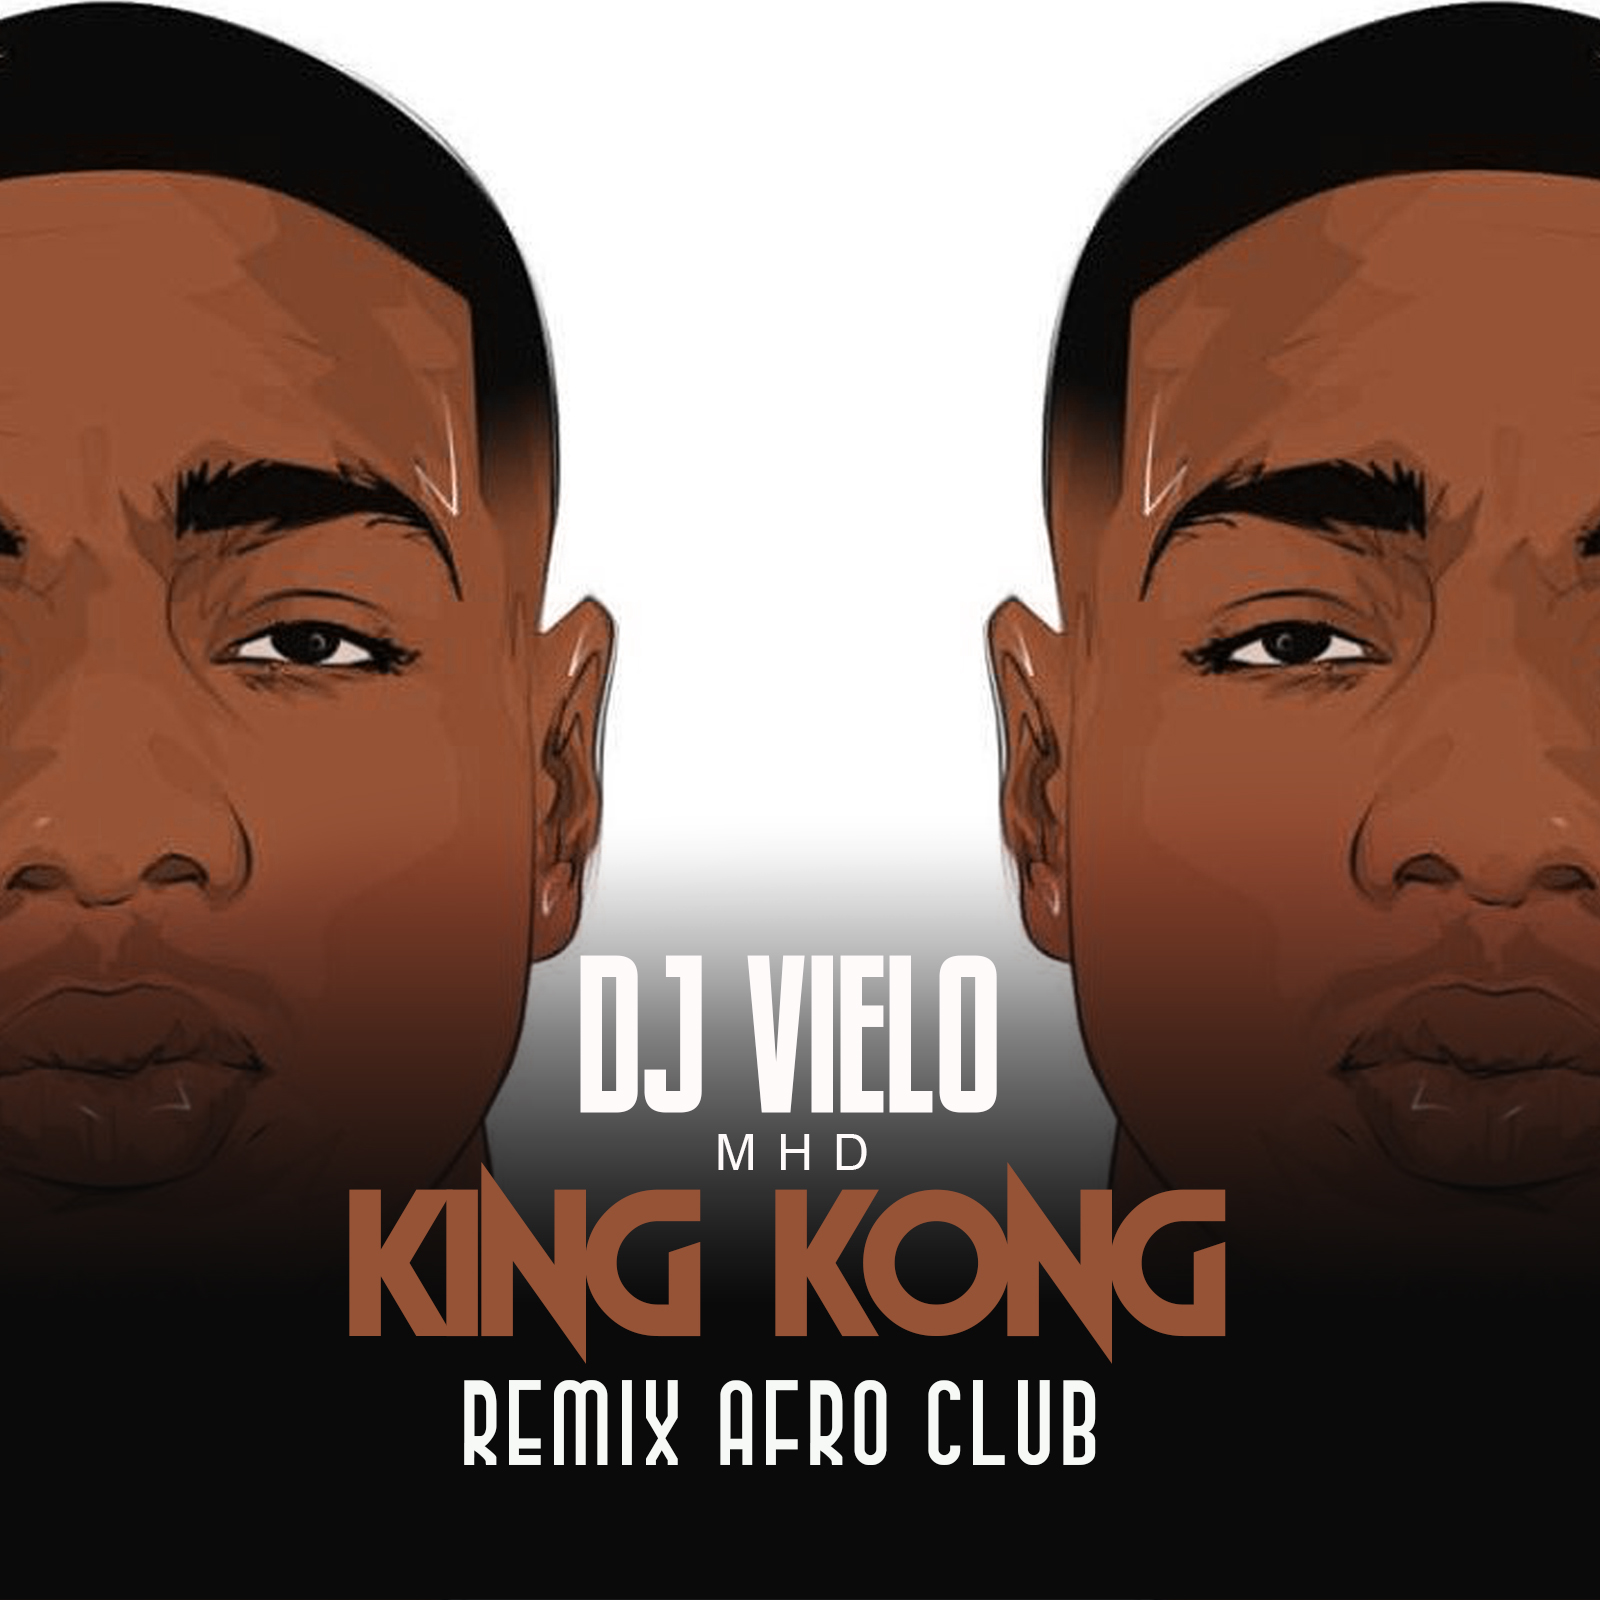 බාගත Dj Vielo X MHD - AFRO TRAP Part.11 (King Kong) Remix Afro Club DISPO SUR SPOTIFY, DEEZER, ITUNES